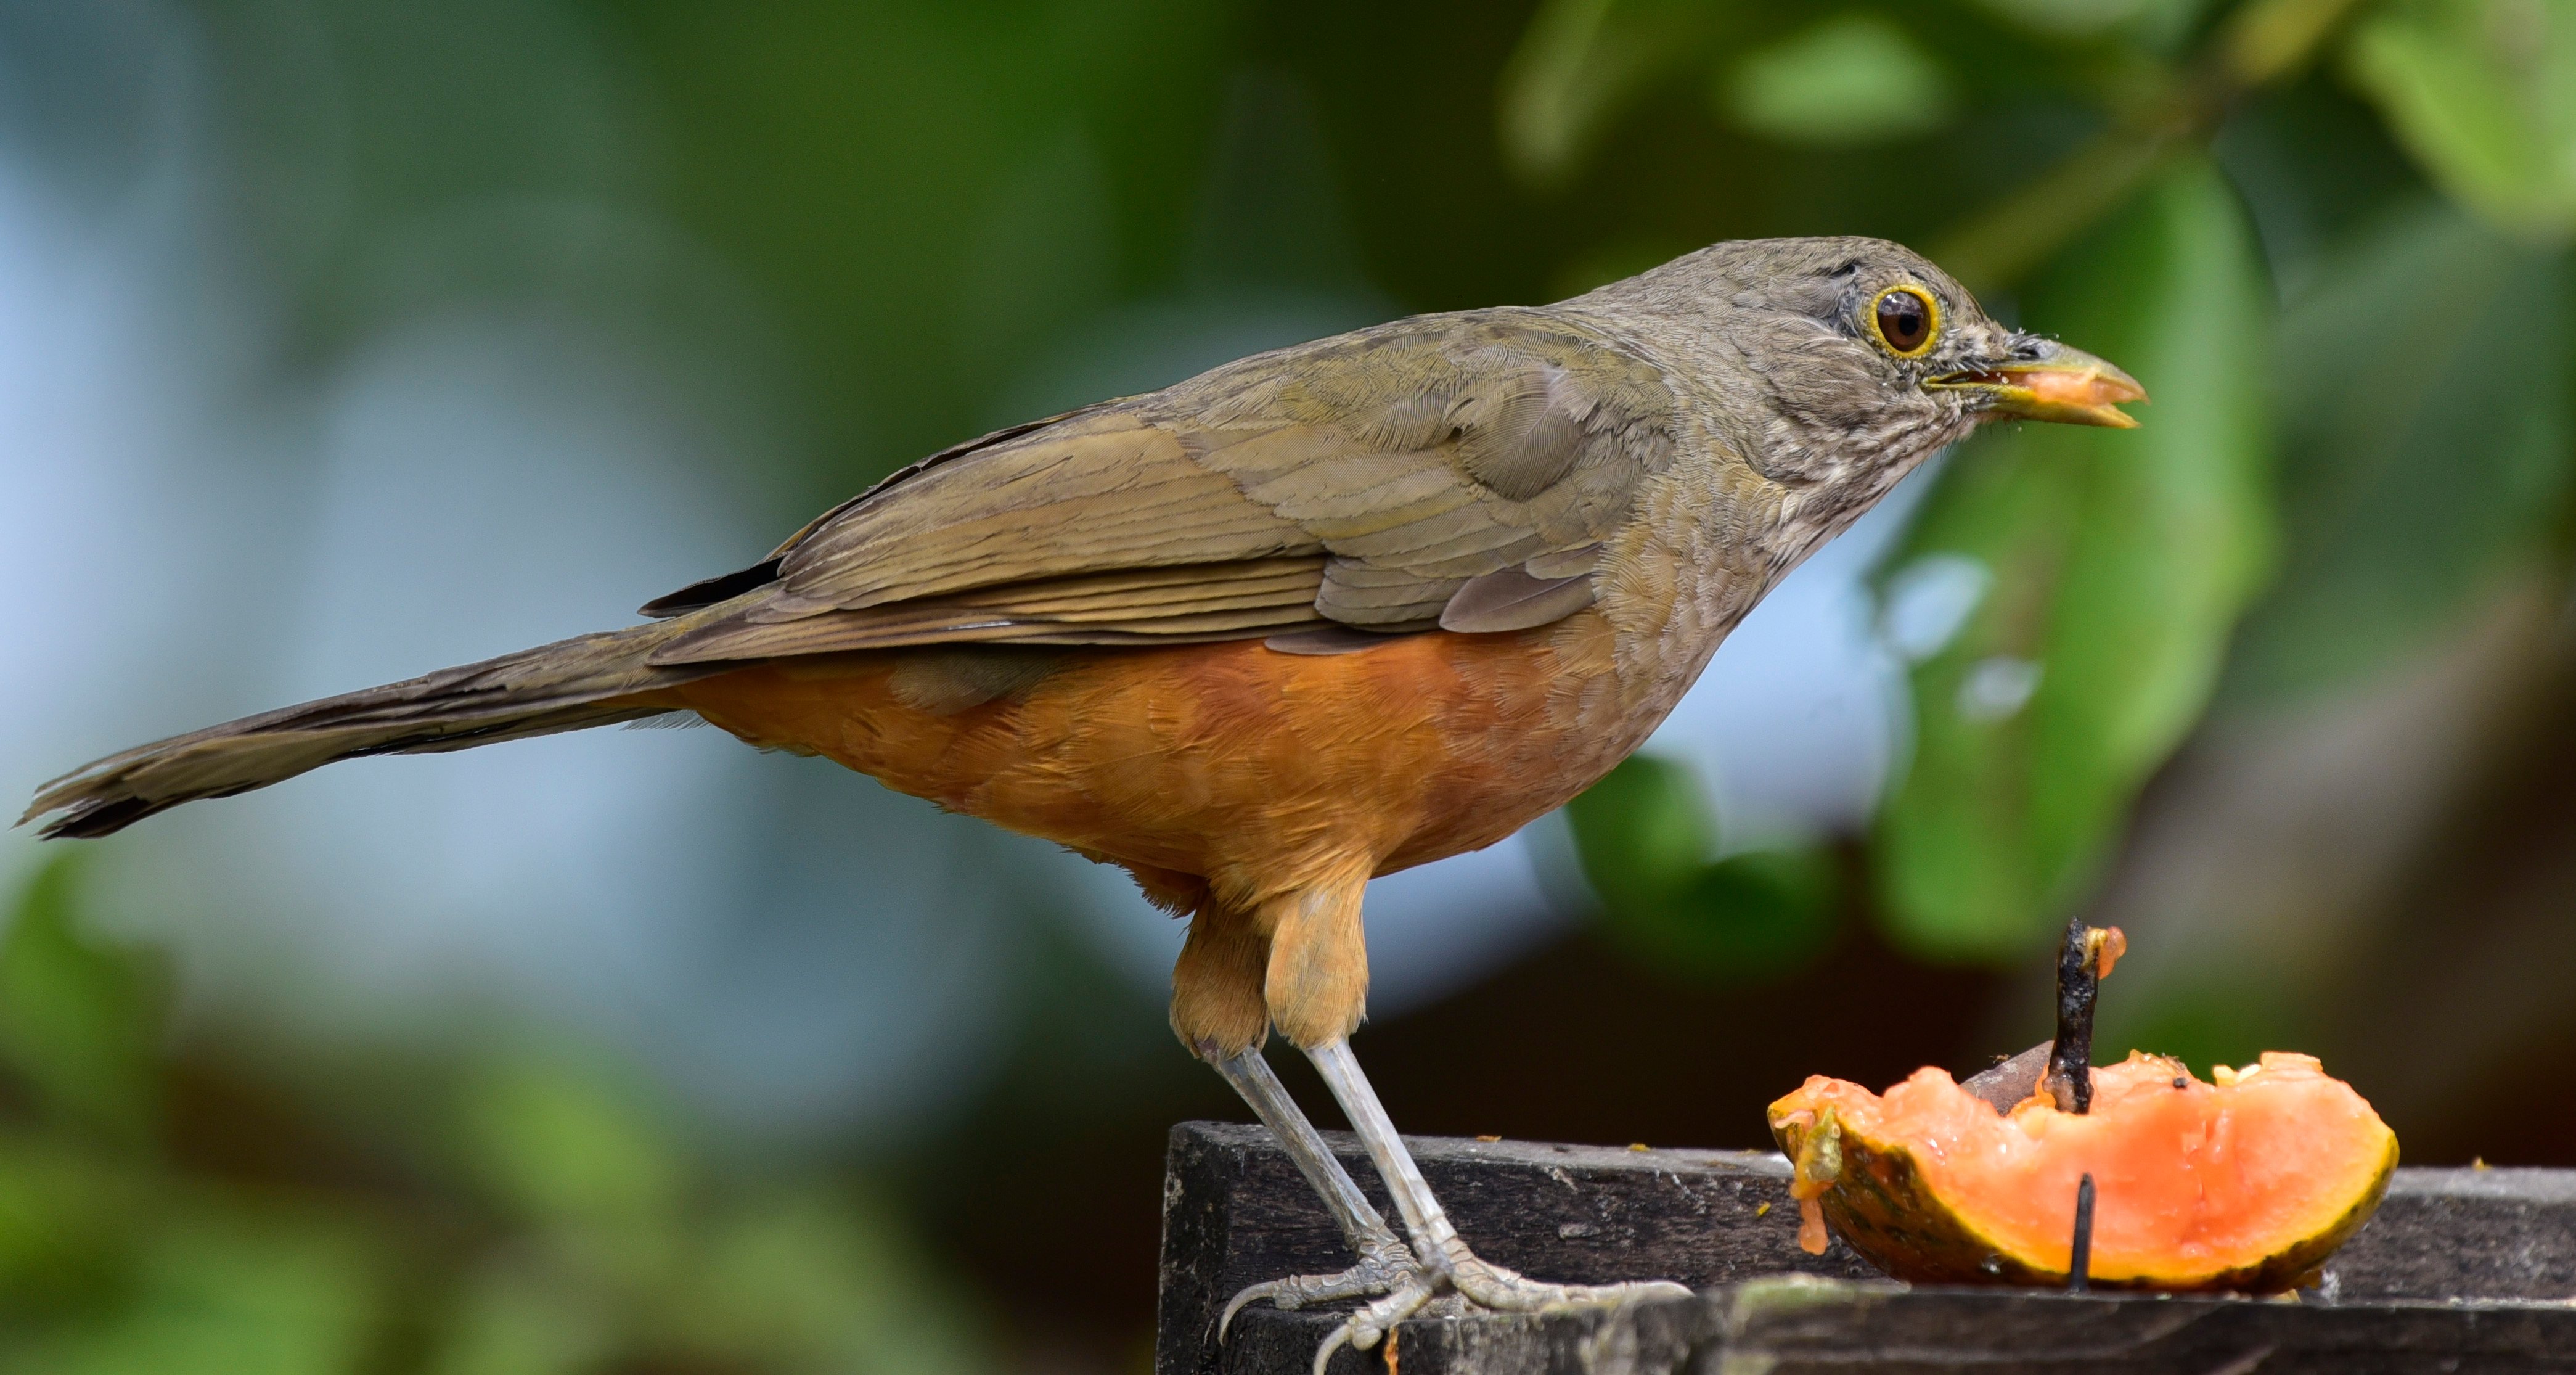 Sabiá-laranjeiras ave símbolo do estado de São Paulo. Foi imortalizado na “Canção do Exílio”, de Gonçalves Dias